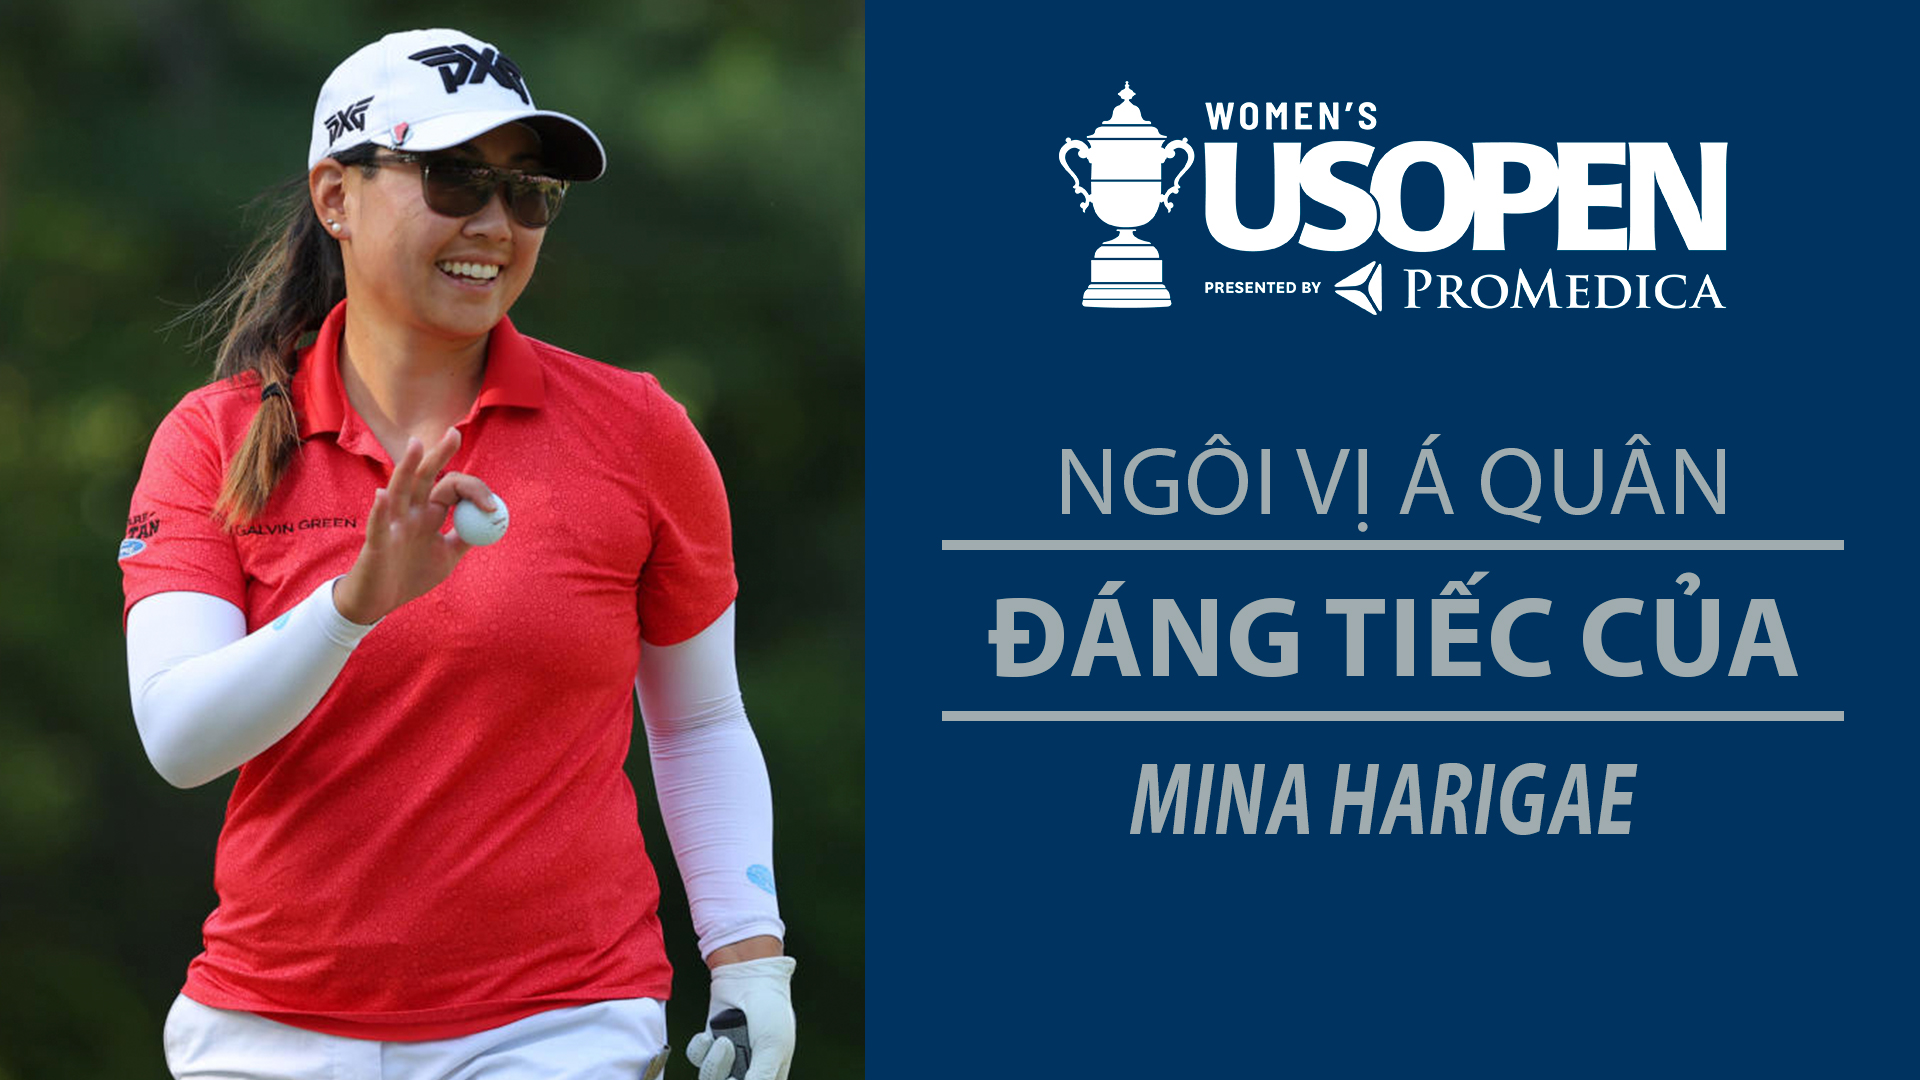 Ngôi vị á quân đáng tiếc của Mina Harigae tại US Open - US Women Open